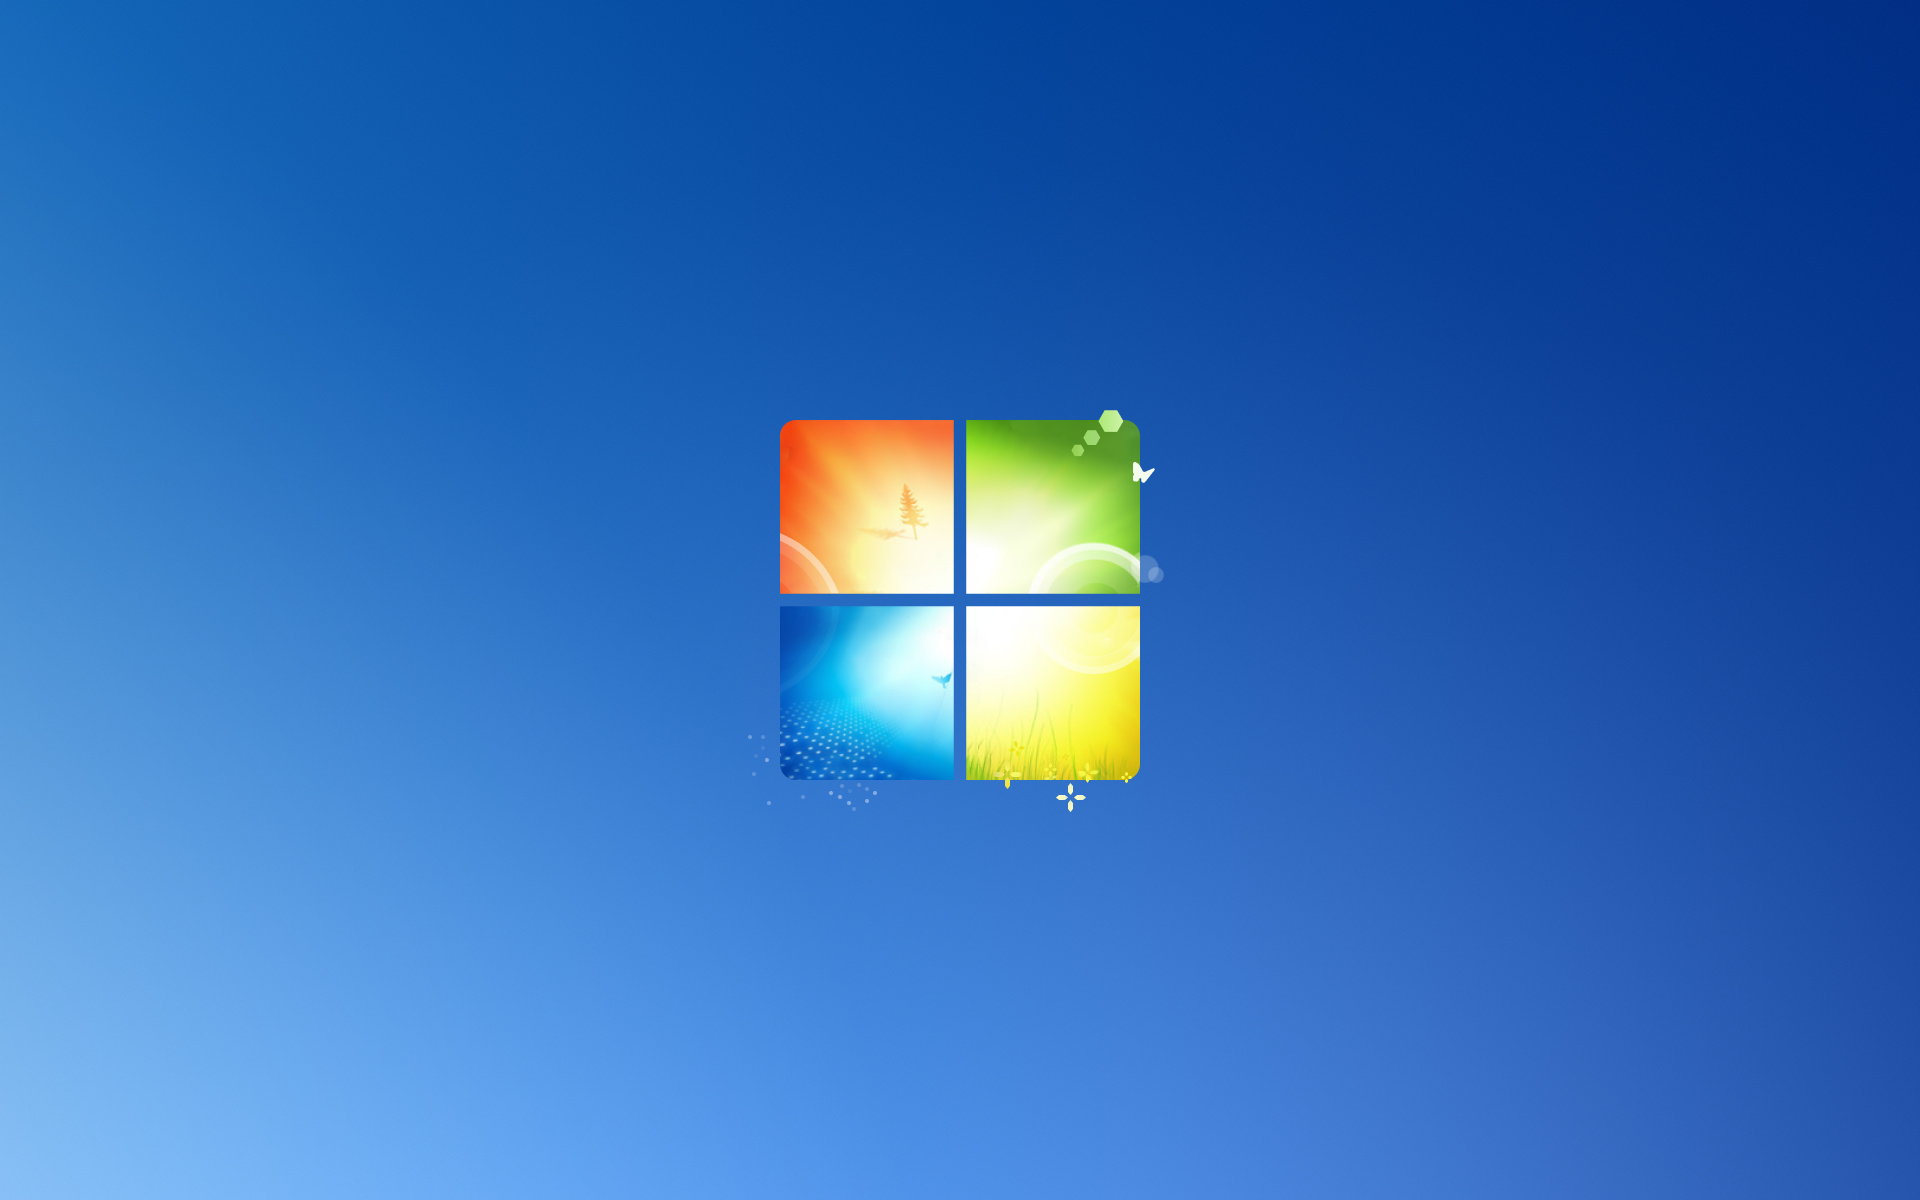 Hình nền Windows 10X/7 được thiết kế theo phong cách Windows 11: Bạn thích phong cách thiết kế nổi bật, hiện đại của Windows 11? Hãy cập nhật ngay hình nền Windows 10X/7 được thiết kế theo phong cách này để làm mới màn hình dễ dàng và nhanh chóng. Hình ảnh sắc nét và độc đáo này chắc chắn sẽ khiến bạn cảm thấy hài lòng.